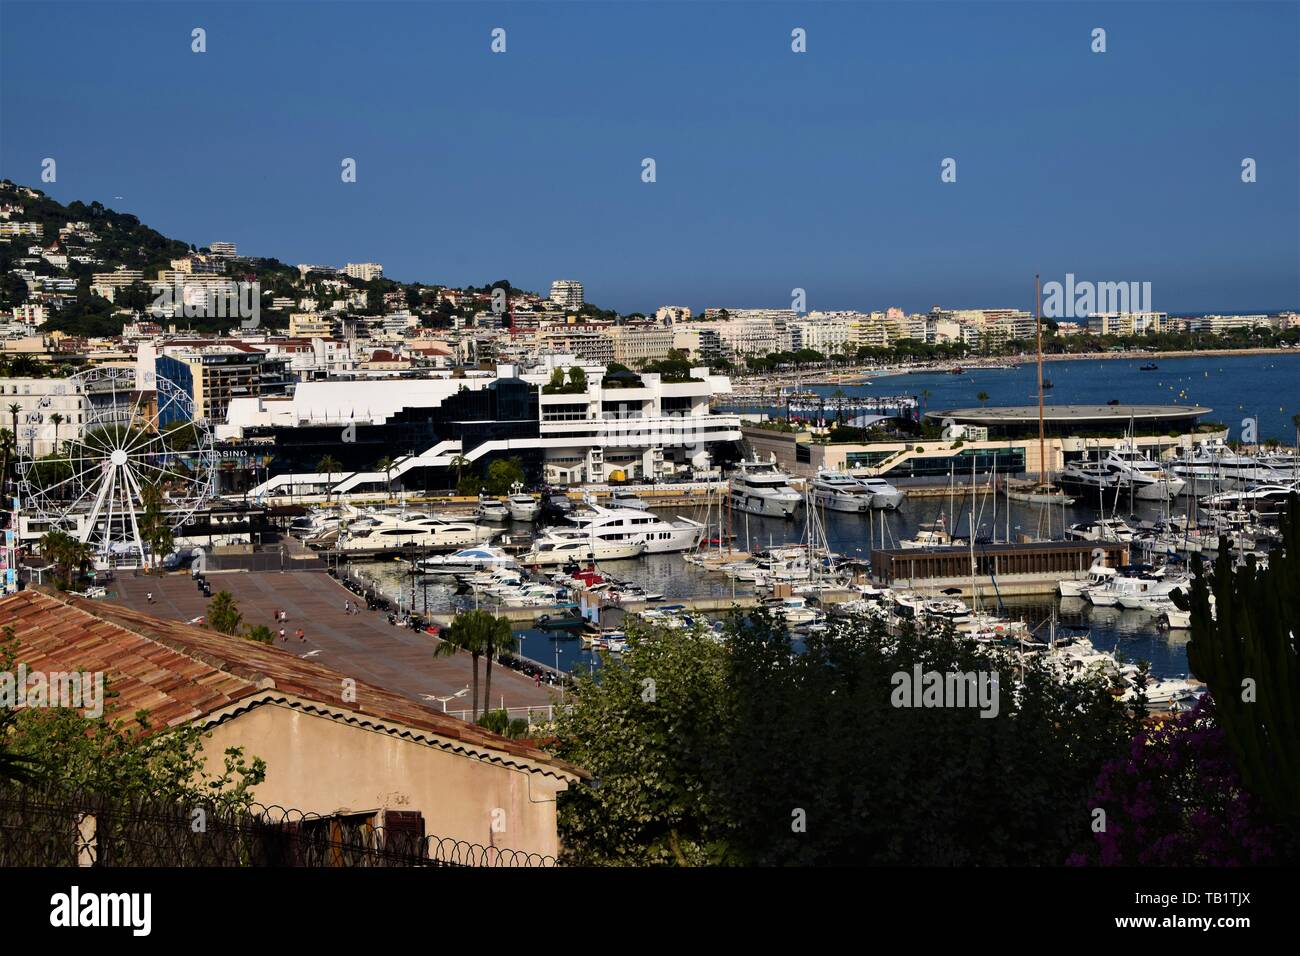 Vue panoramique sur le Vieux Port de Cannes, le Palais des Festivals, la Croisette et la côte, au sud de la France Banque D'Images